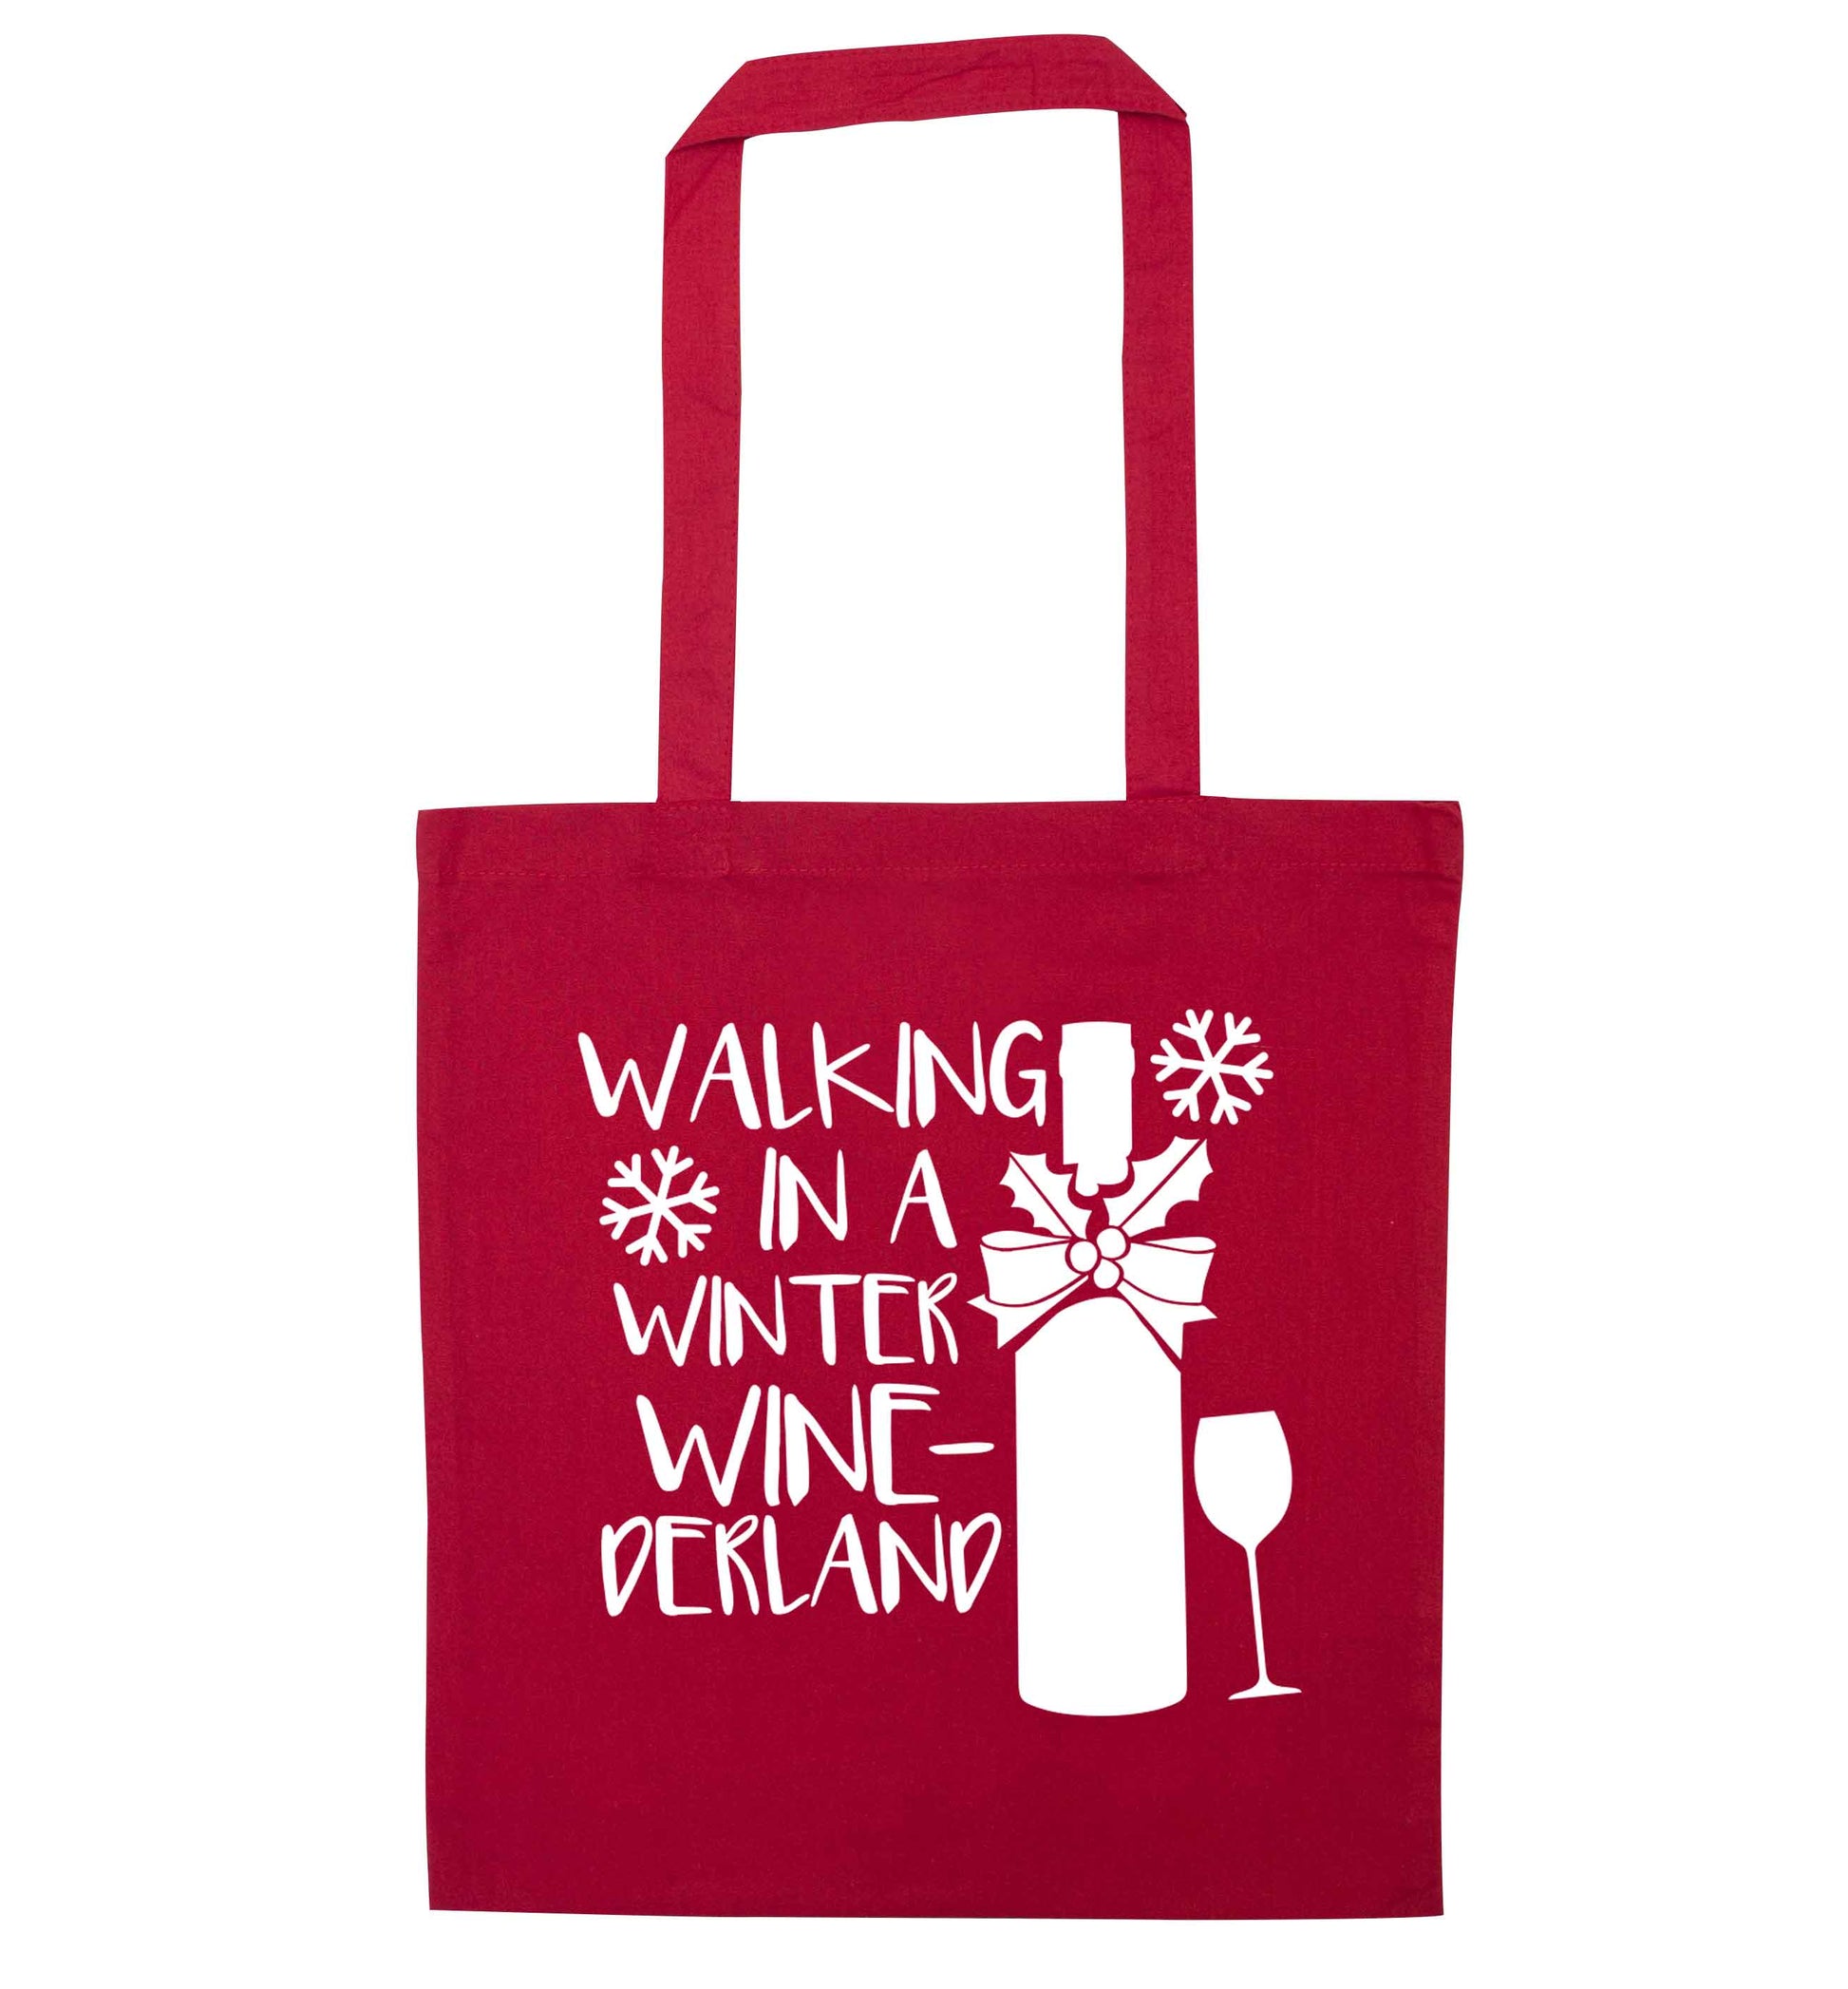 Walking in a wine-derwonderland red tote bag